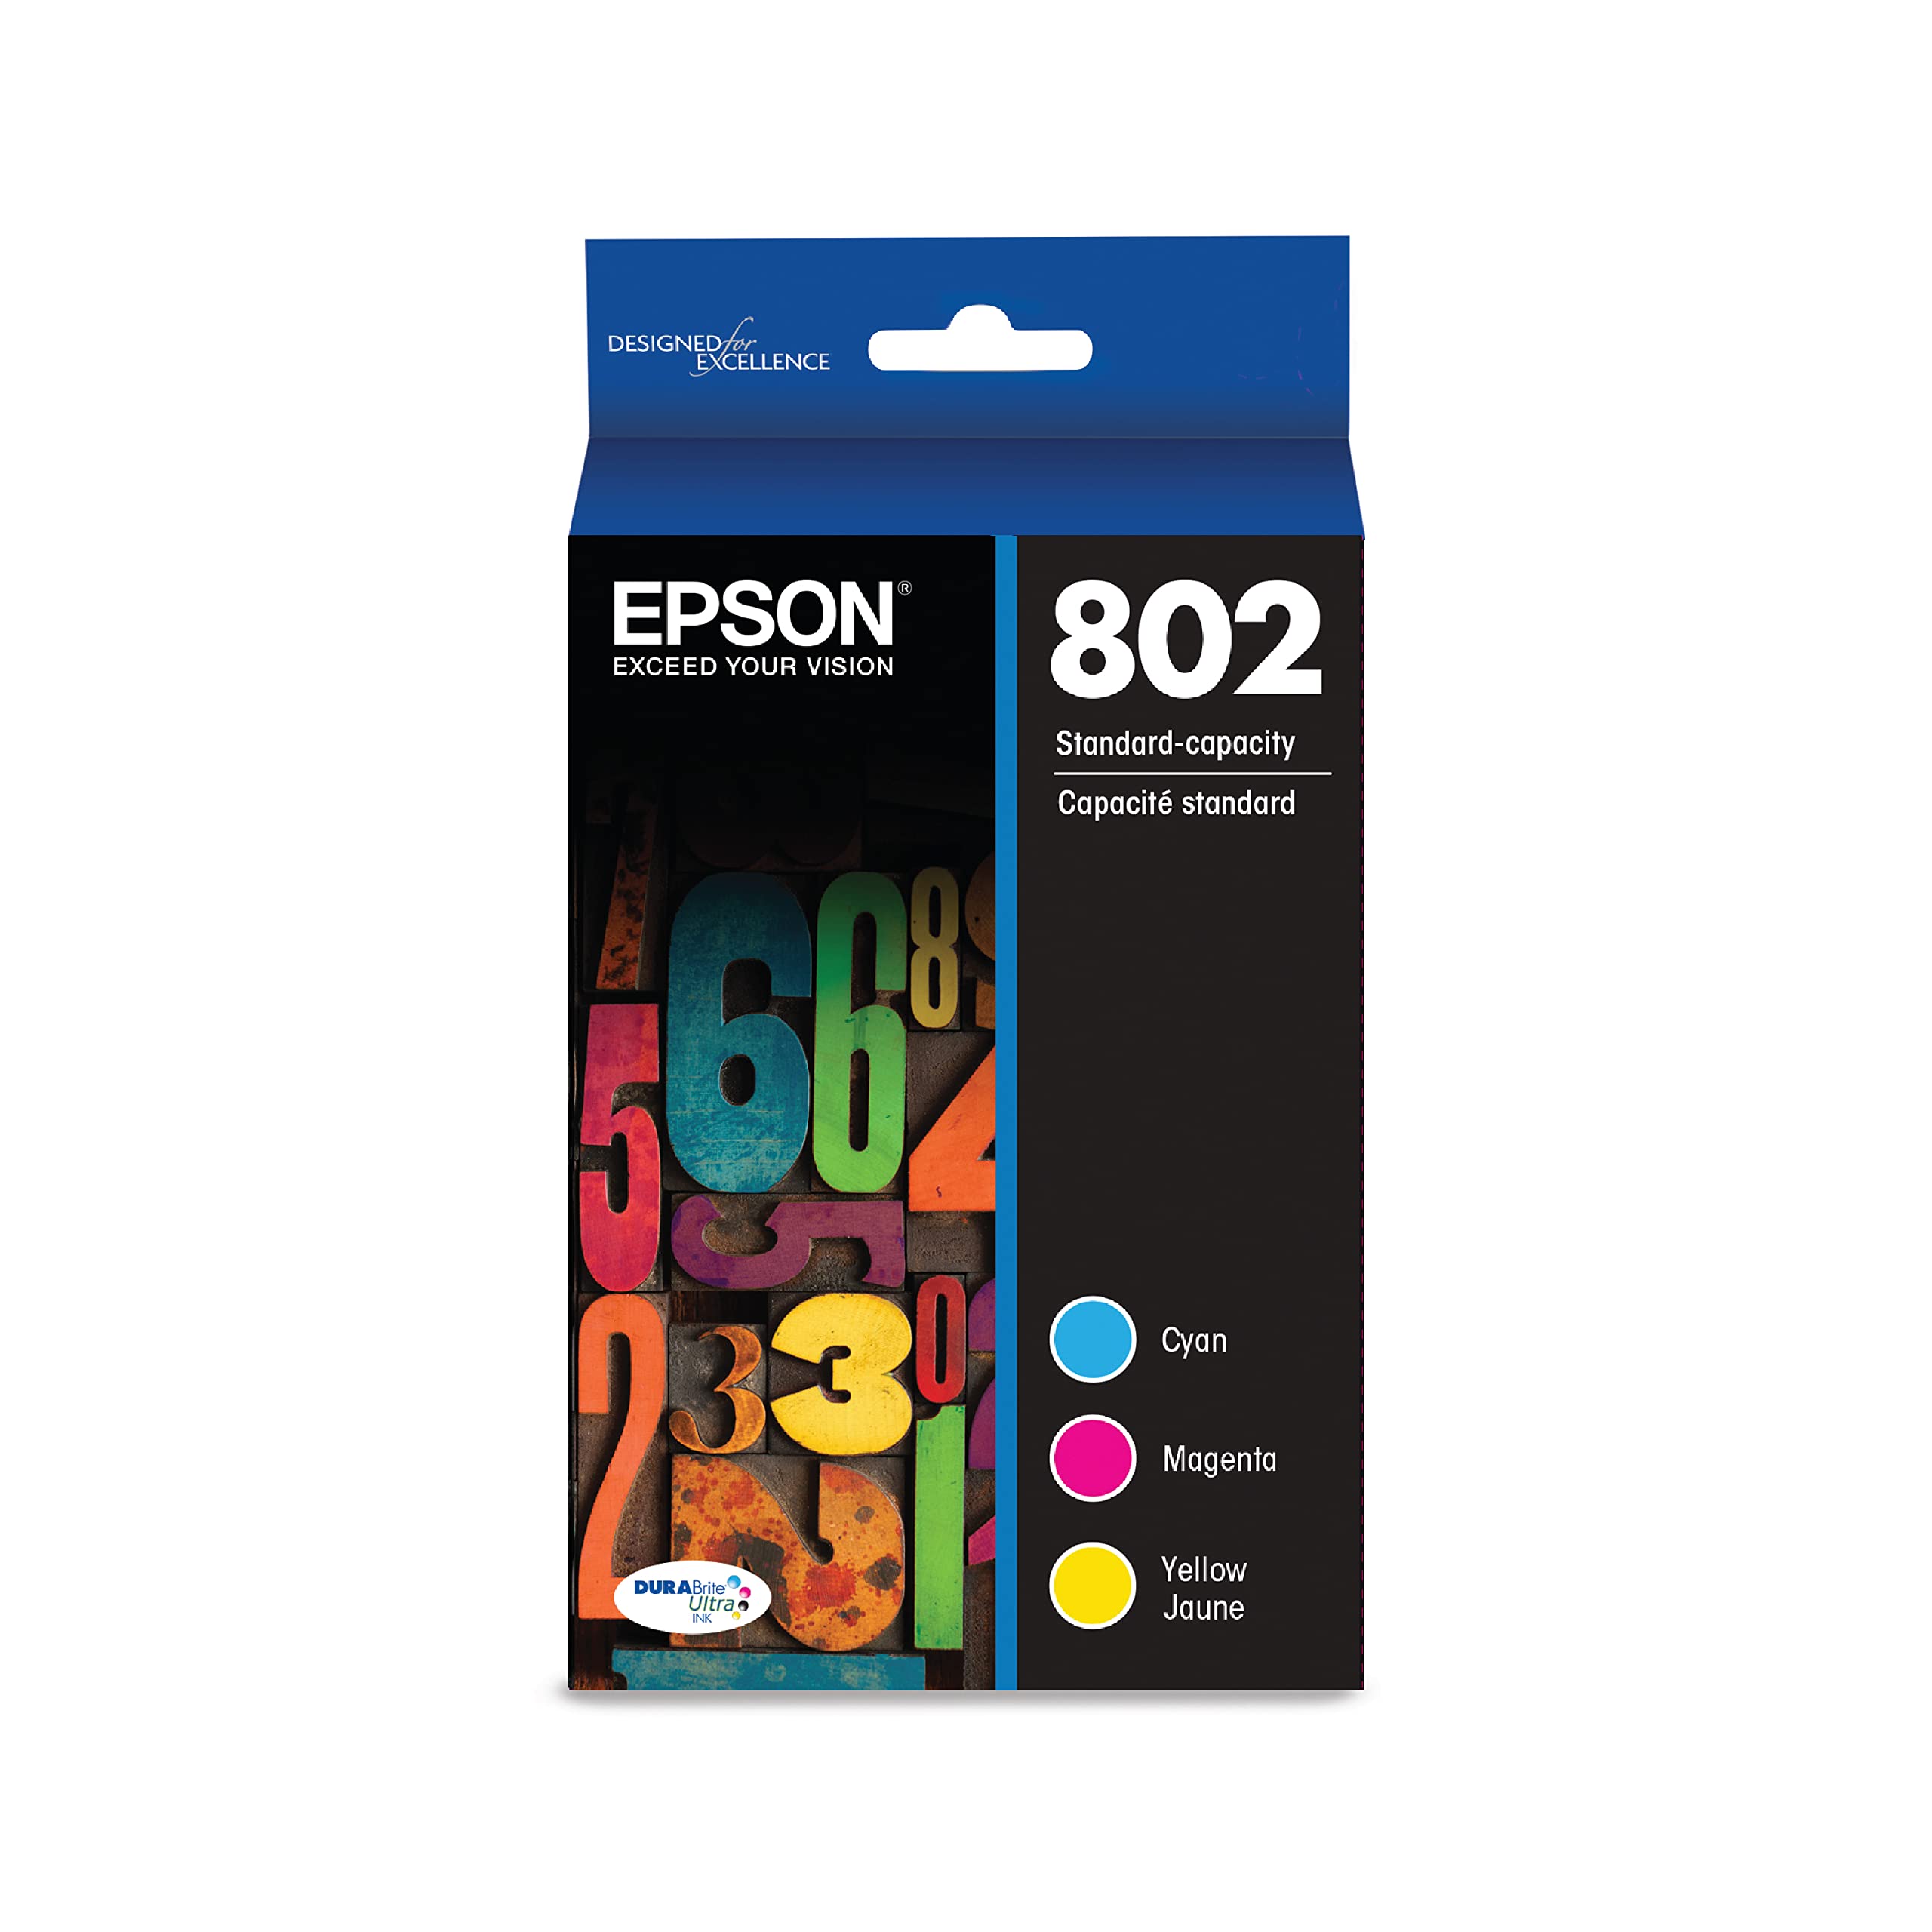 Epson Paquete combinado de color de capacidad estándar de tinta DURABrite Ultra T802 (T802520-S) para impresoras WorkForce Pro seleccionadas